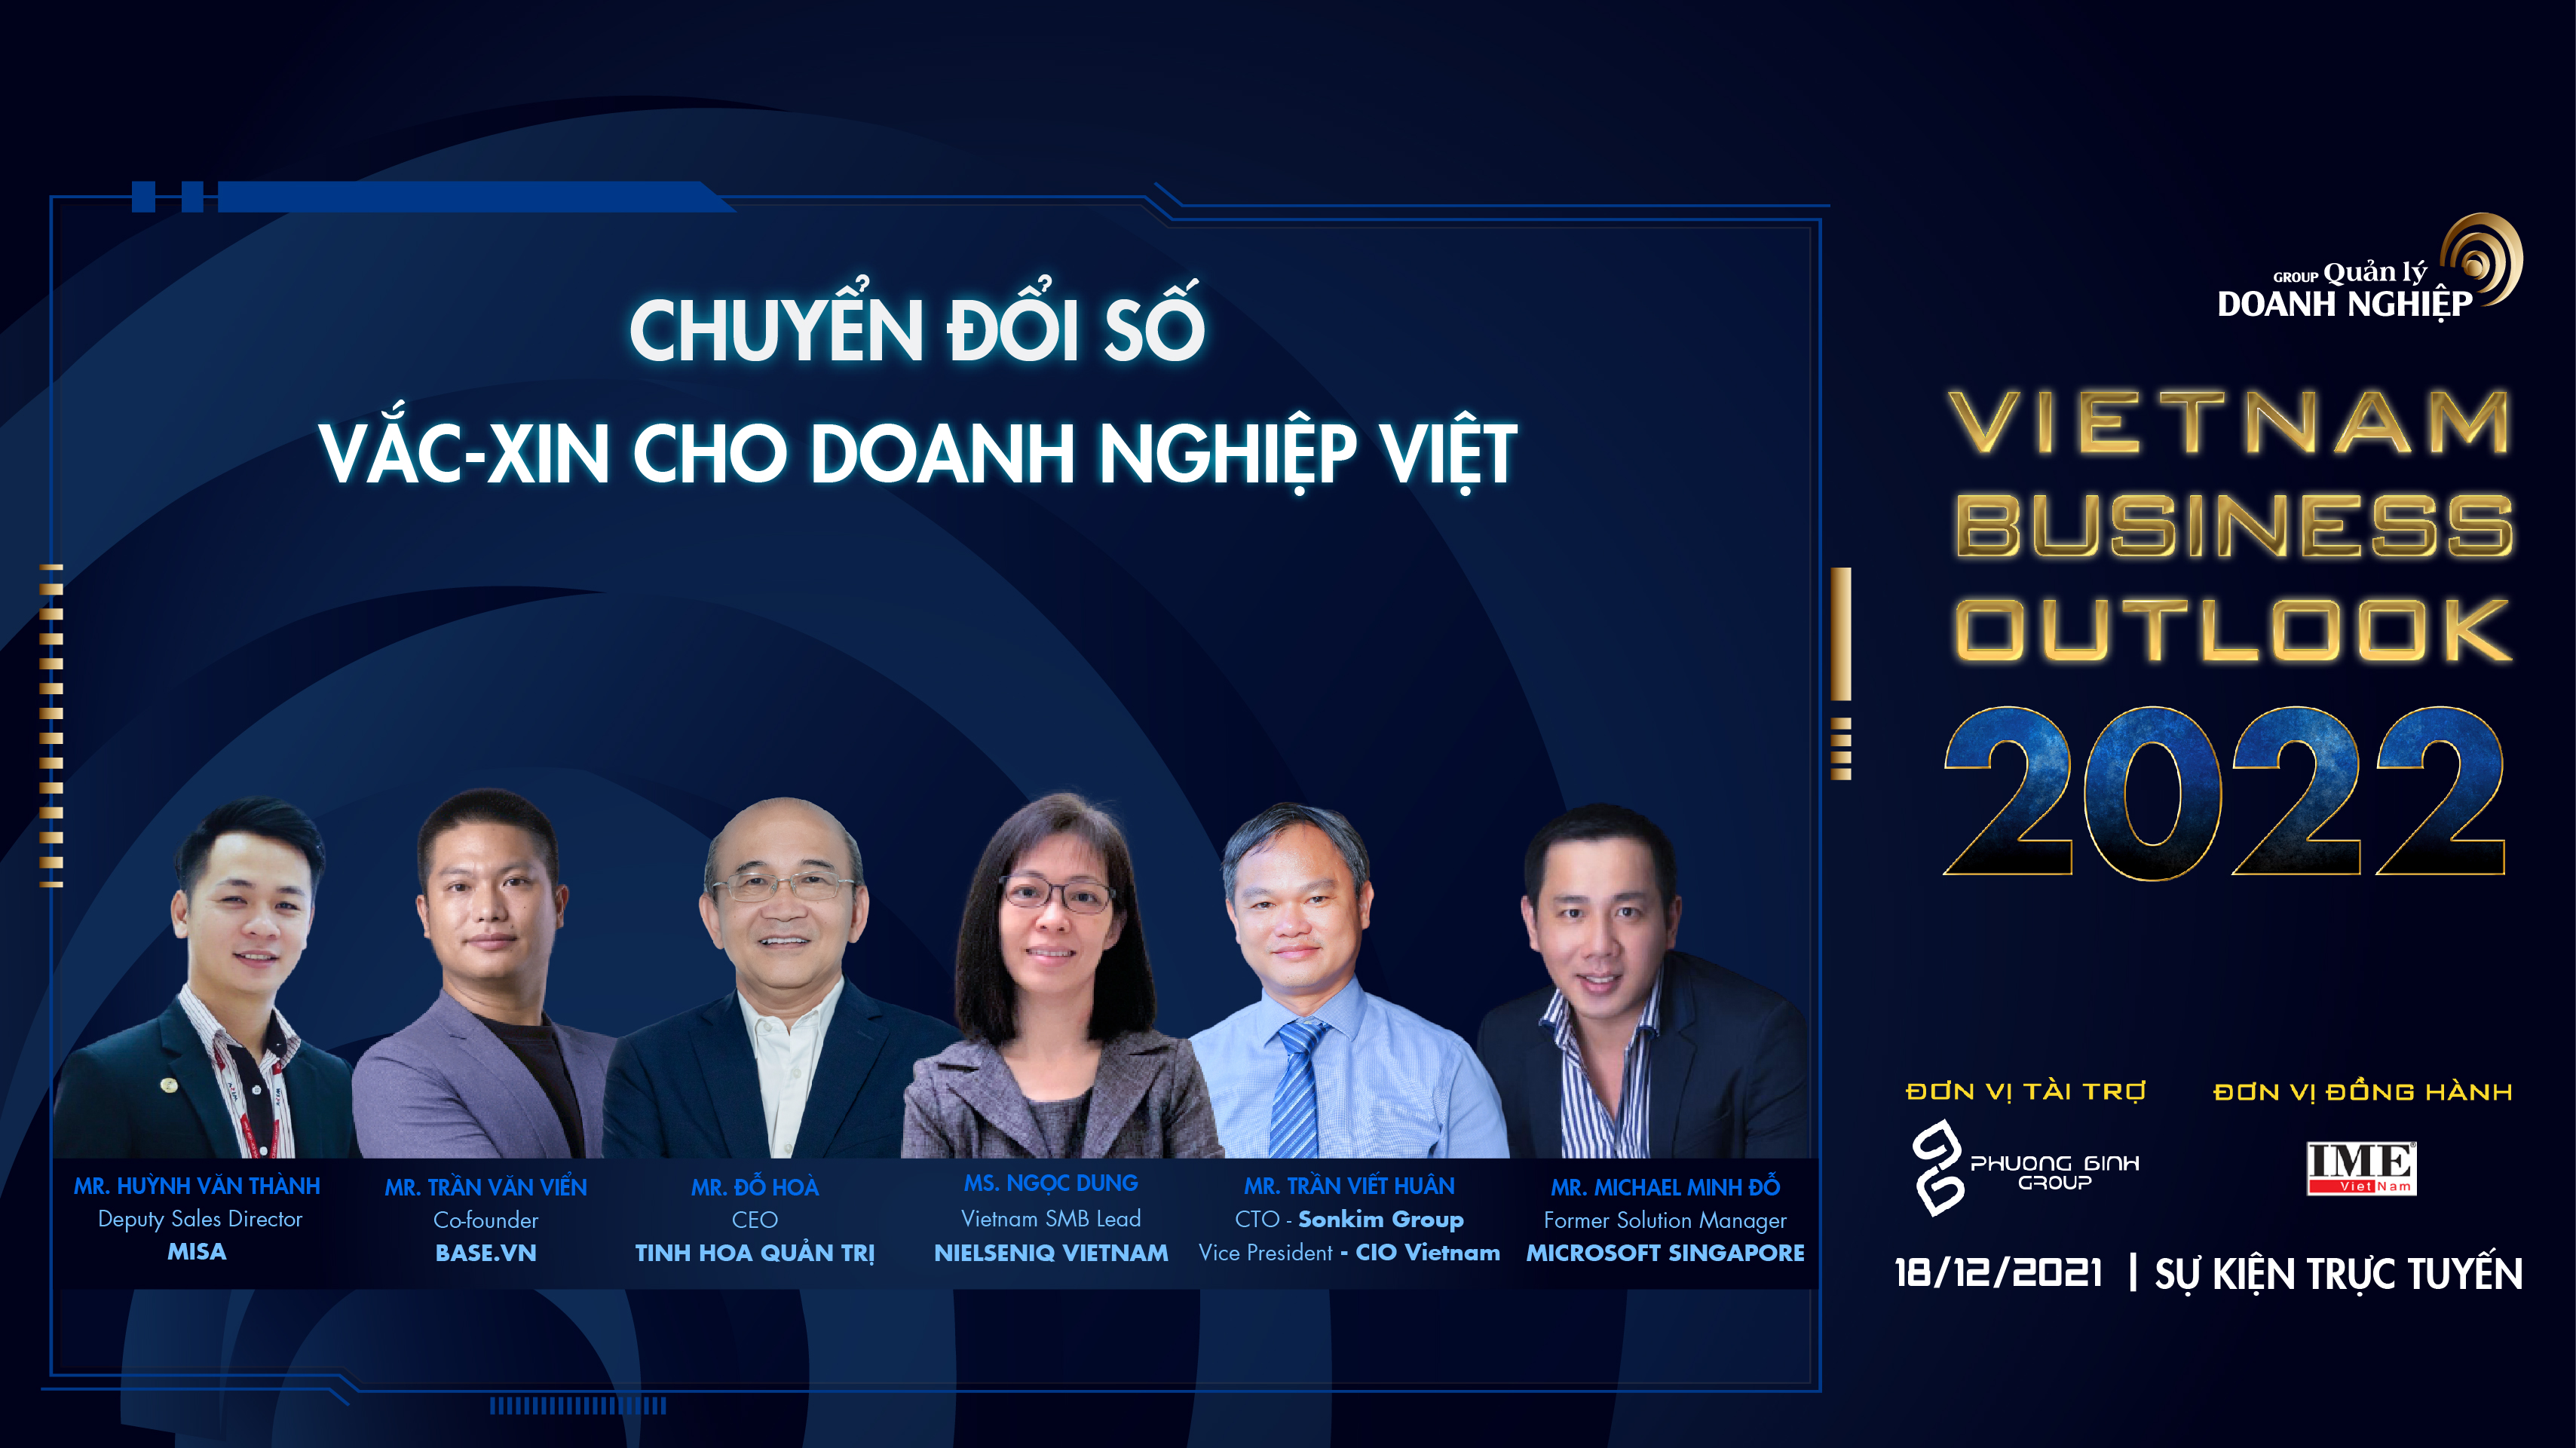 Vietnam Business Outlook 2022